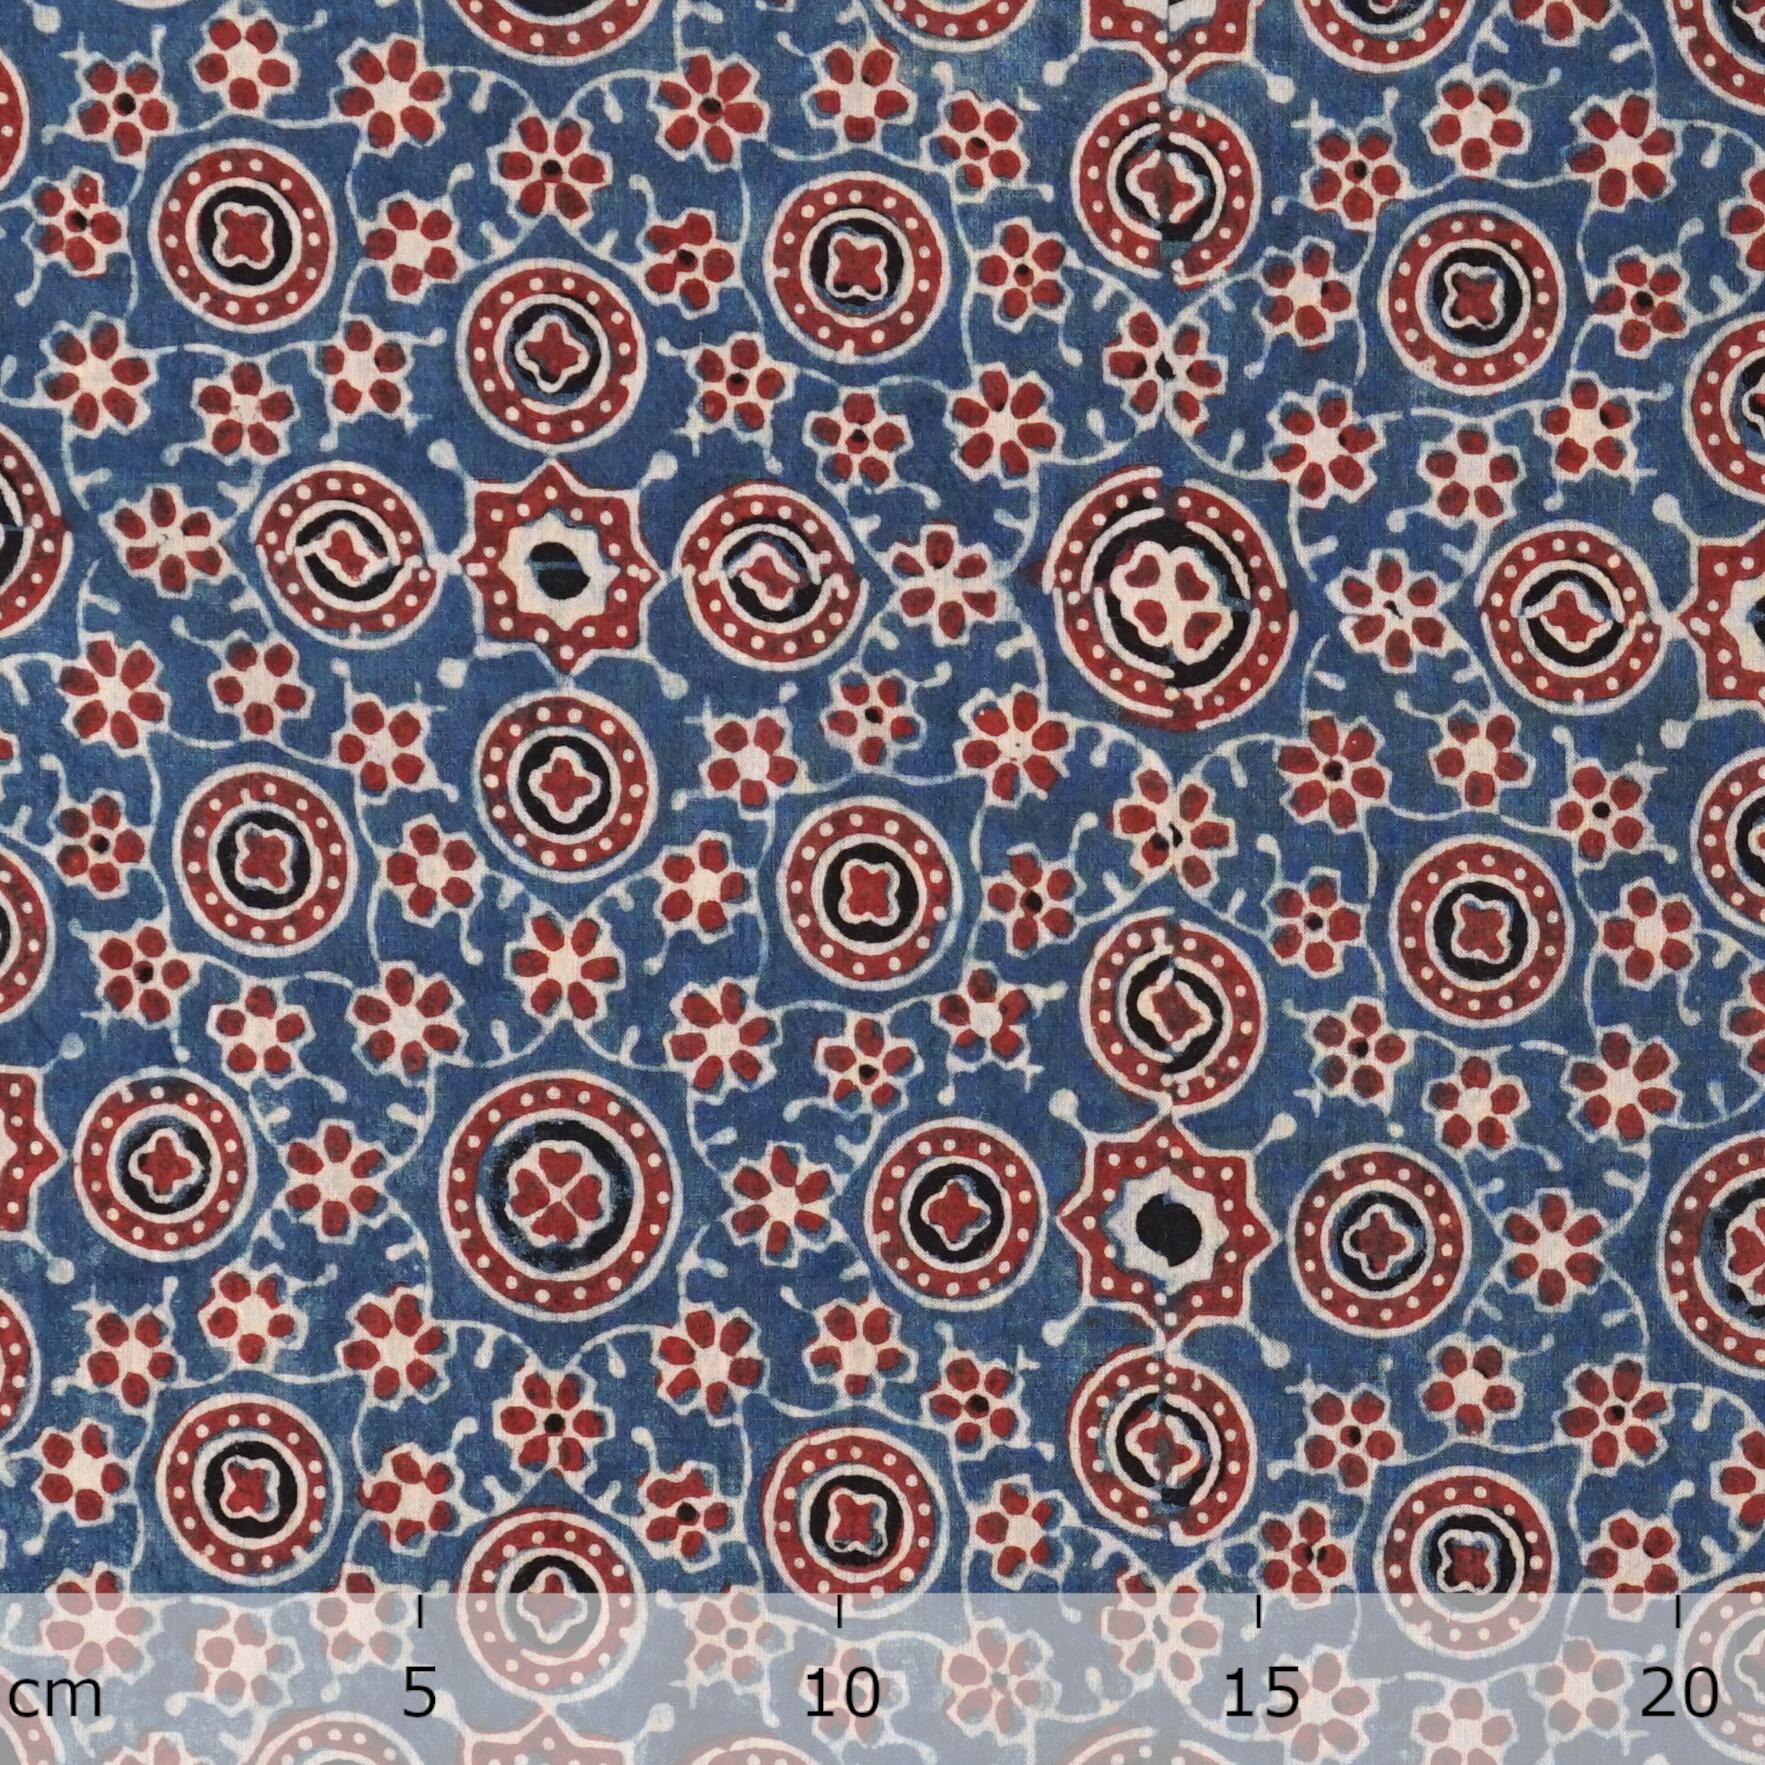 SIK31 - Indian Block-Printed Cotton - Carnival Design - Indigo, Red & Black Dye - Ruler